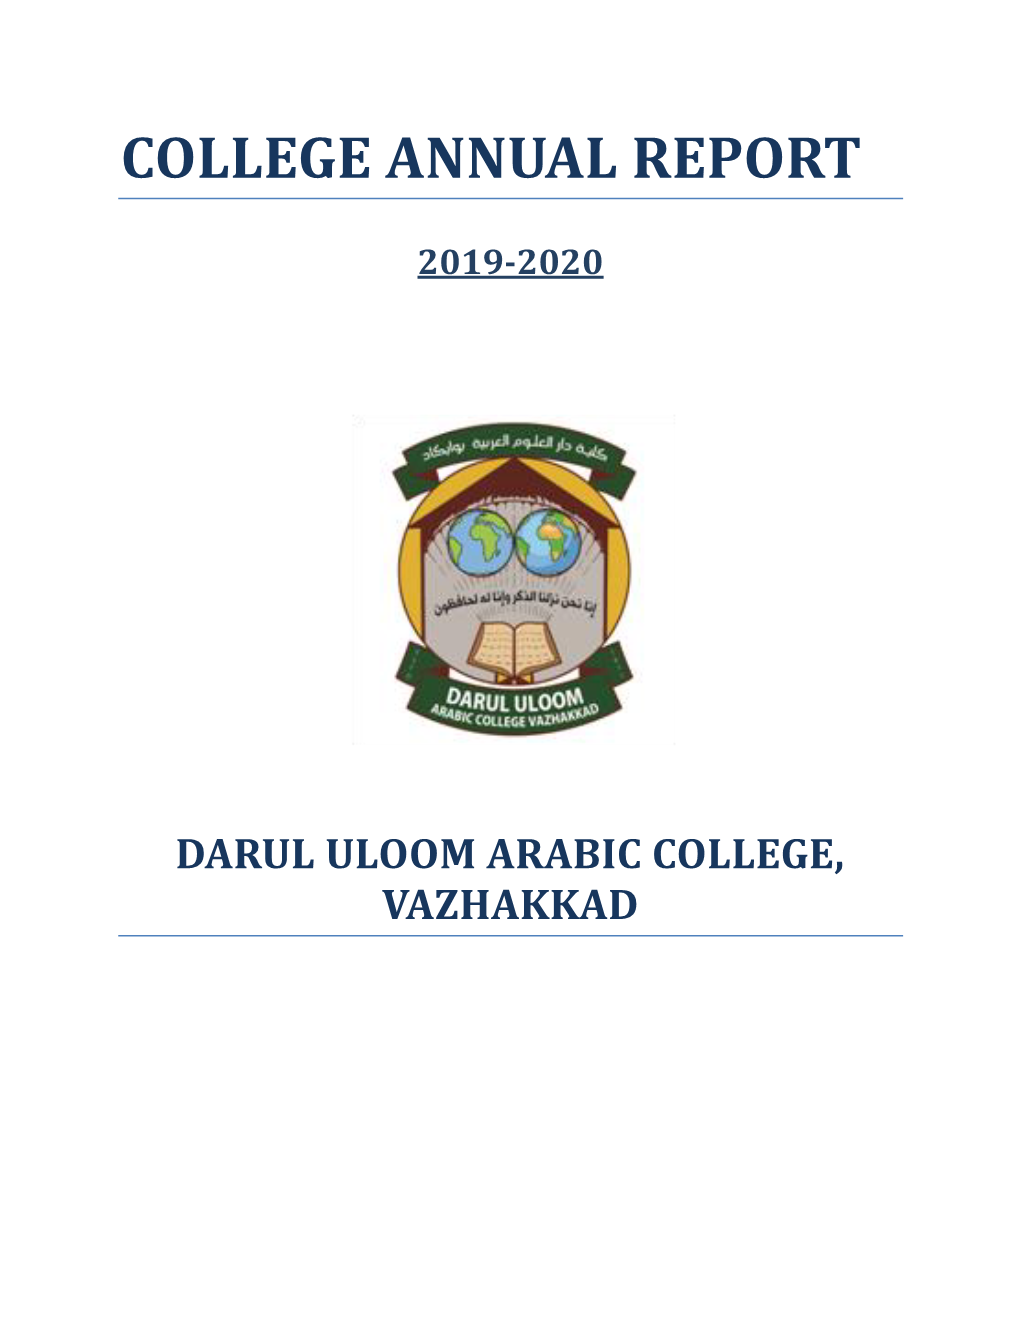 College Annual Report